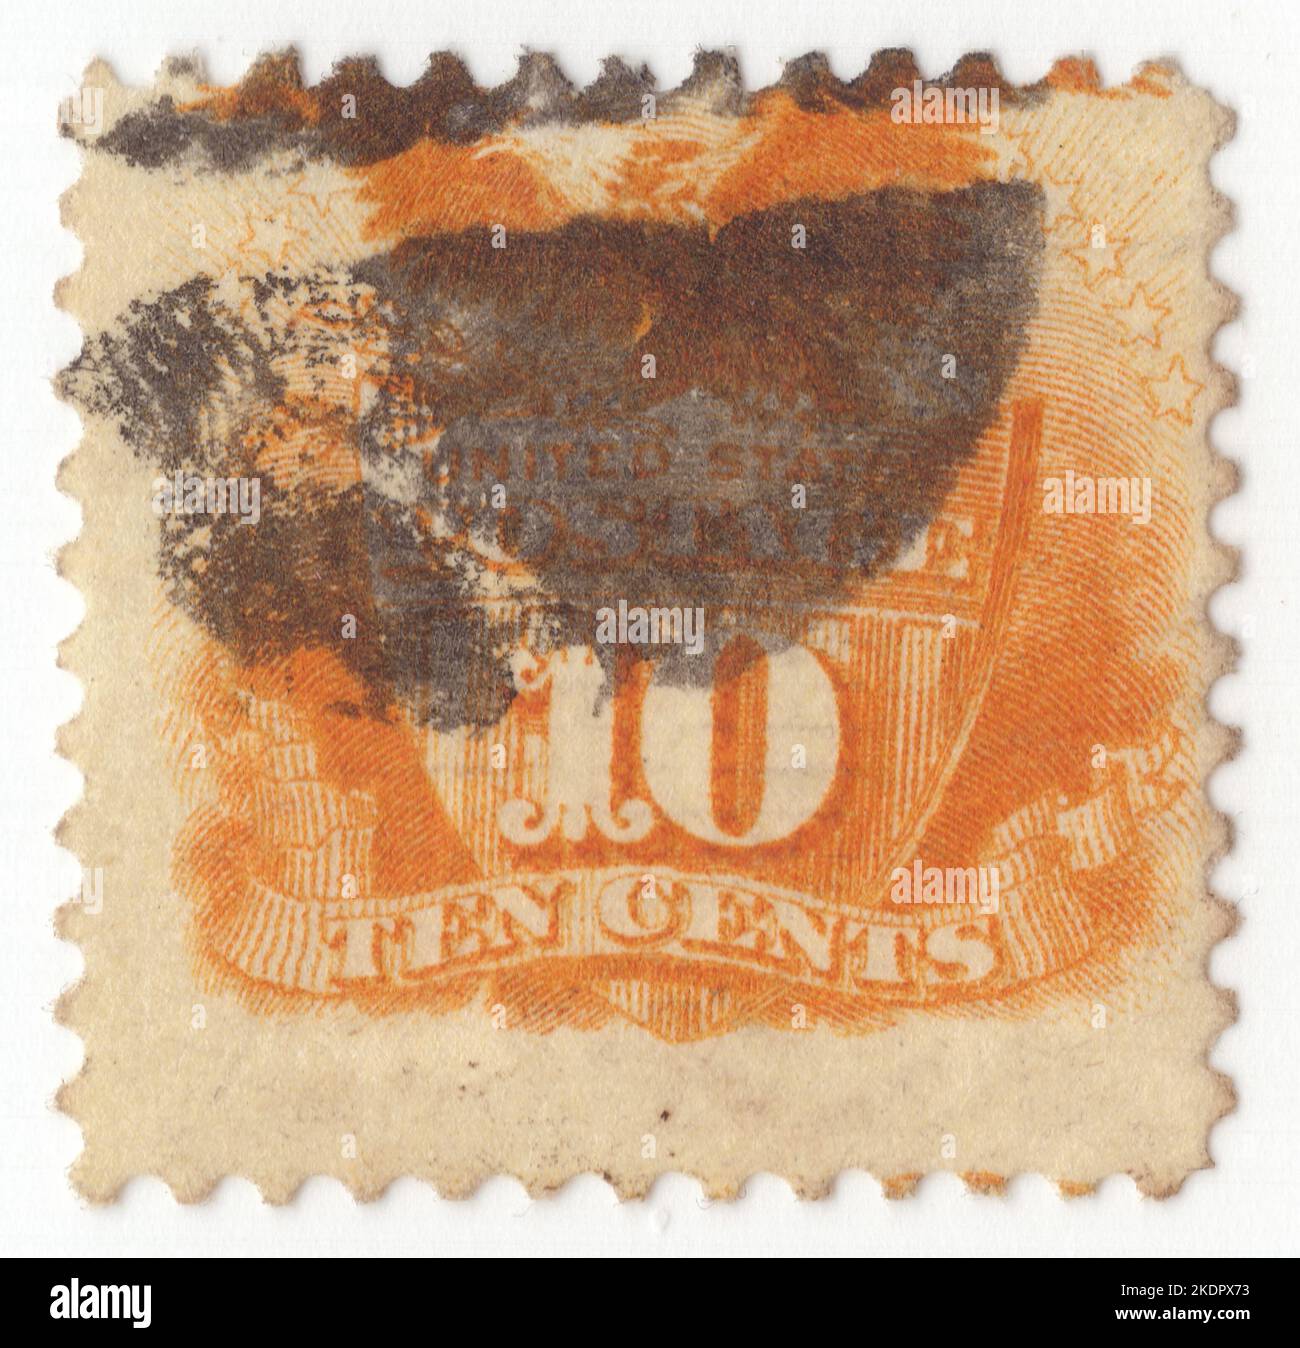 USA - 1869: Eine gelbe Briefmarke mit 10 Cent Darstellung von Schild und Adler. Der amerikanische Adler (Weißadler) hält in seinen Krallen einen Schild mit der Aufschrift 'United States Postage' und einer Nominalfigur Stockfoto